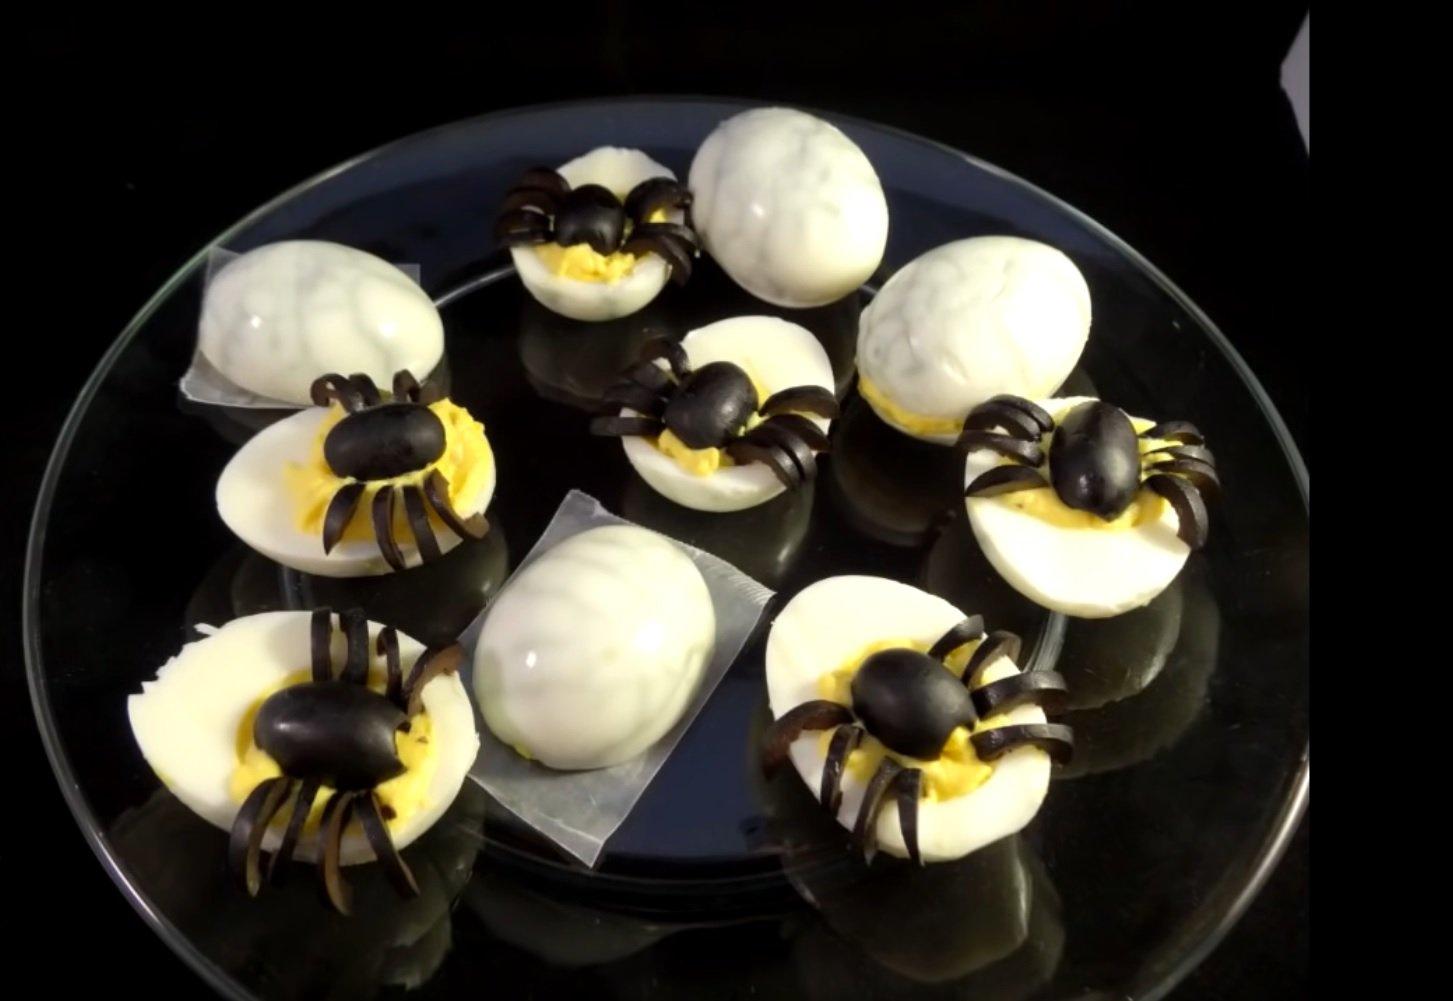 Trang trí trứng mạng nhện cho tiệc Halloween thêm ấn tượng. (Nguồn: Kênh YouTube yoyomax12 - the diet free zone)